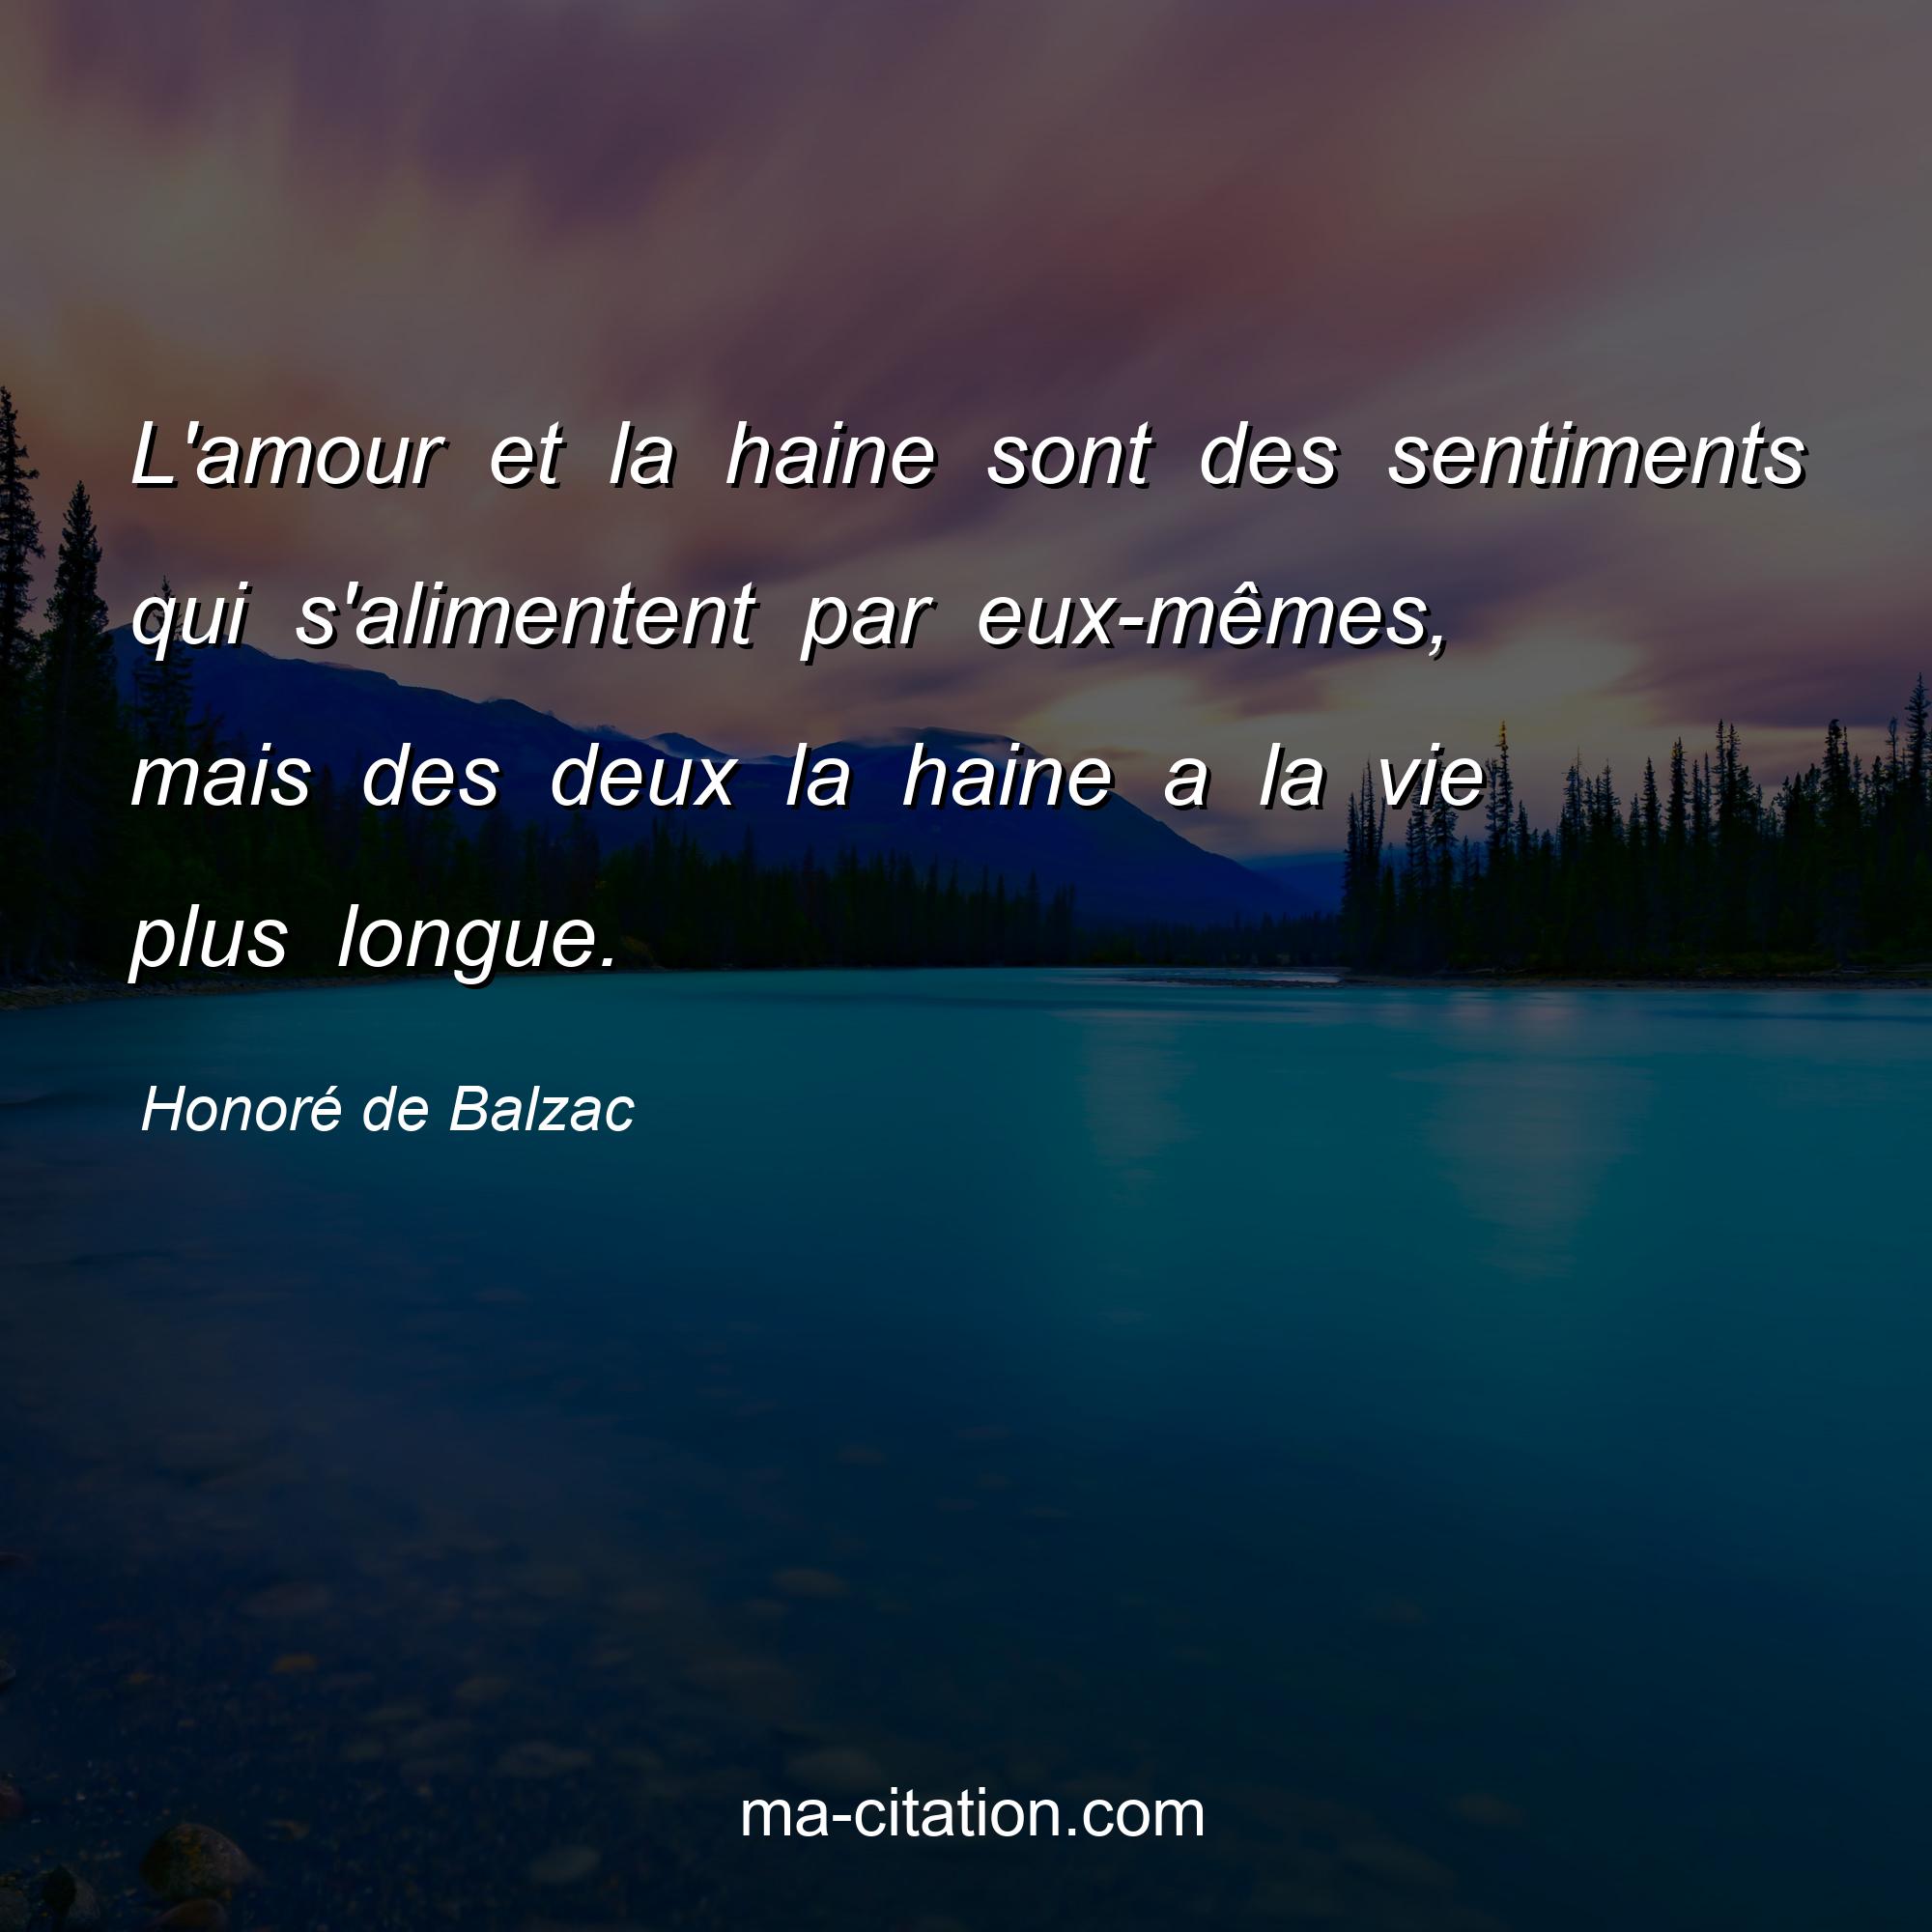 Honoré de Balzac : L'amour et la haine sont des sentiments qui s'alimentent par eux-mêmes, mais des deux la haine a la vie plus longue.